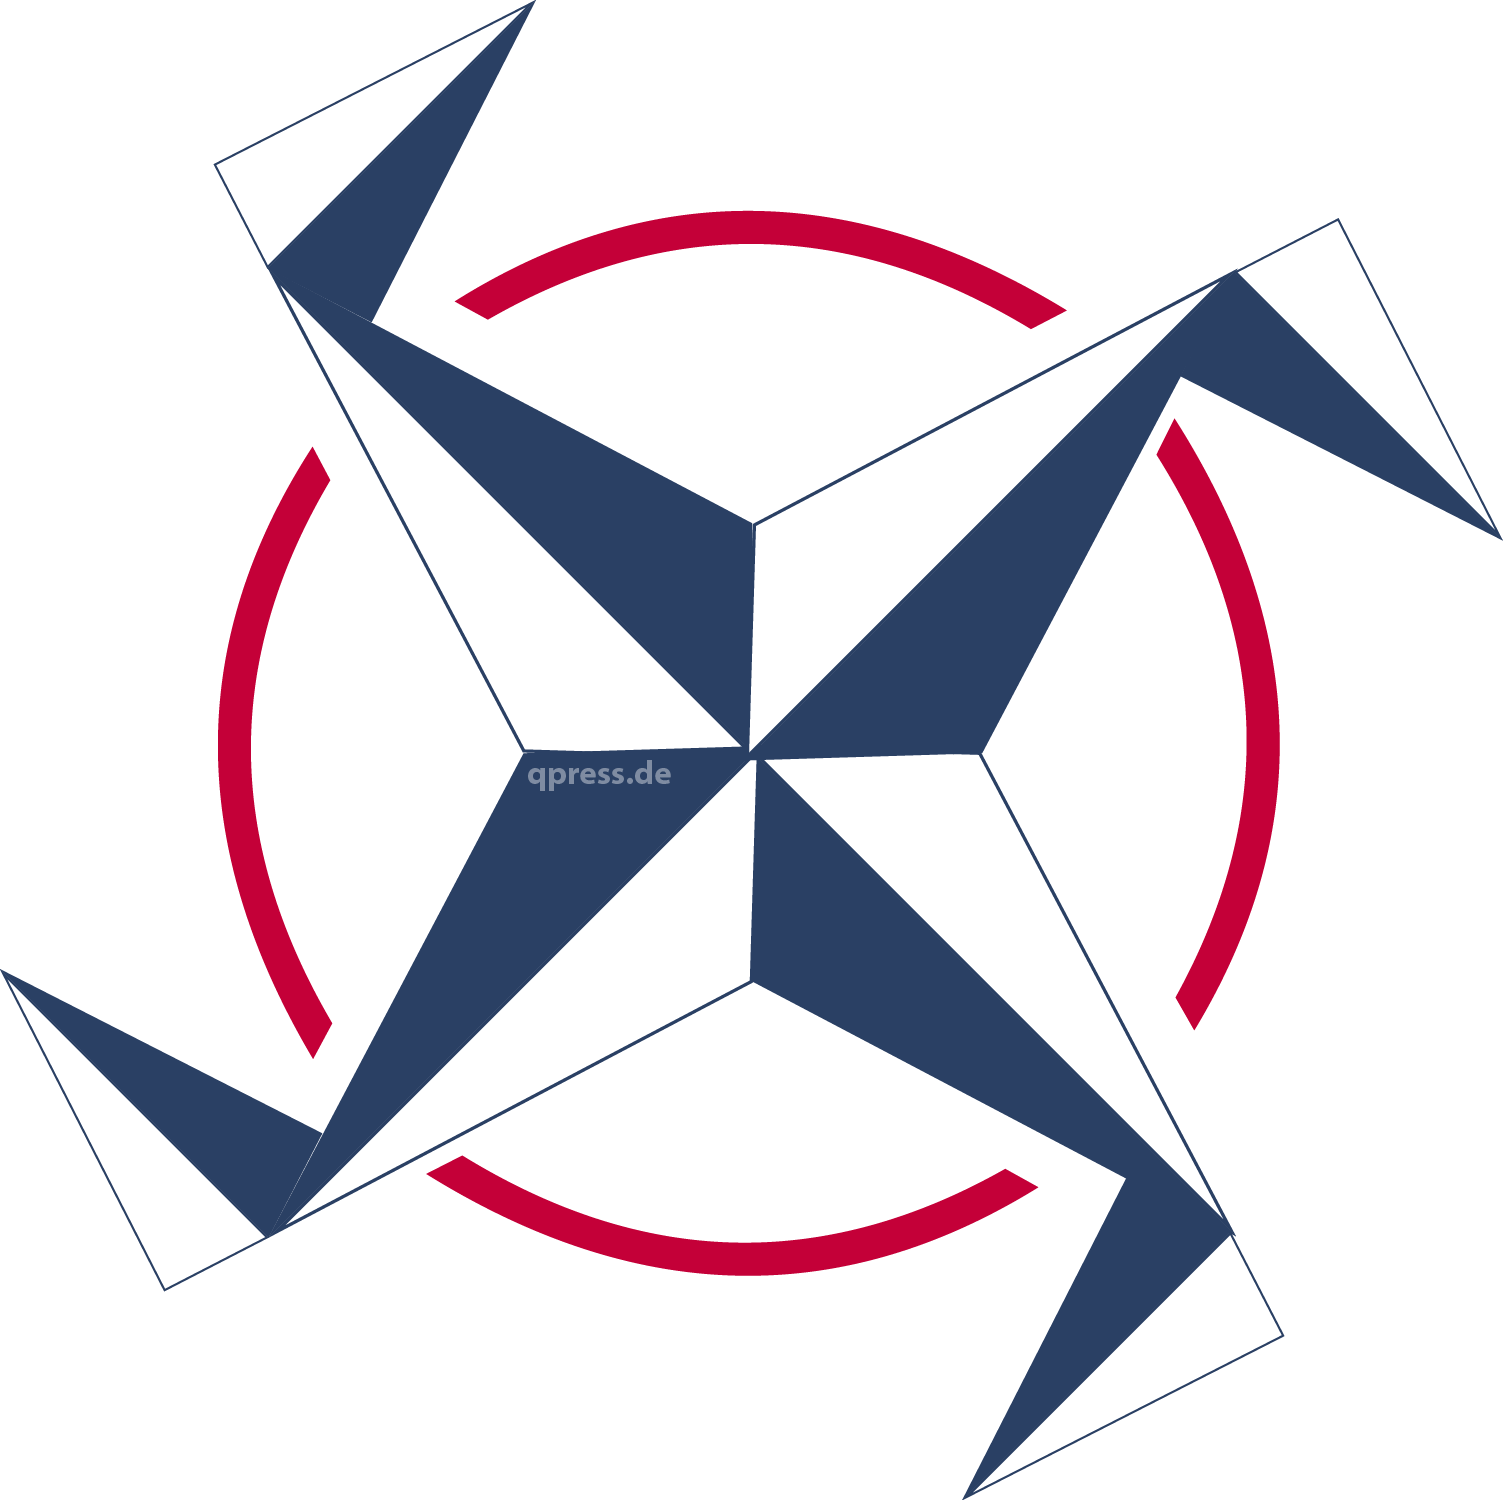 NATO_Windmuehle__signet_Logo_Nazibude_weiss_blau_qpress